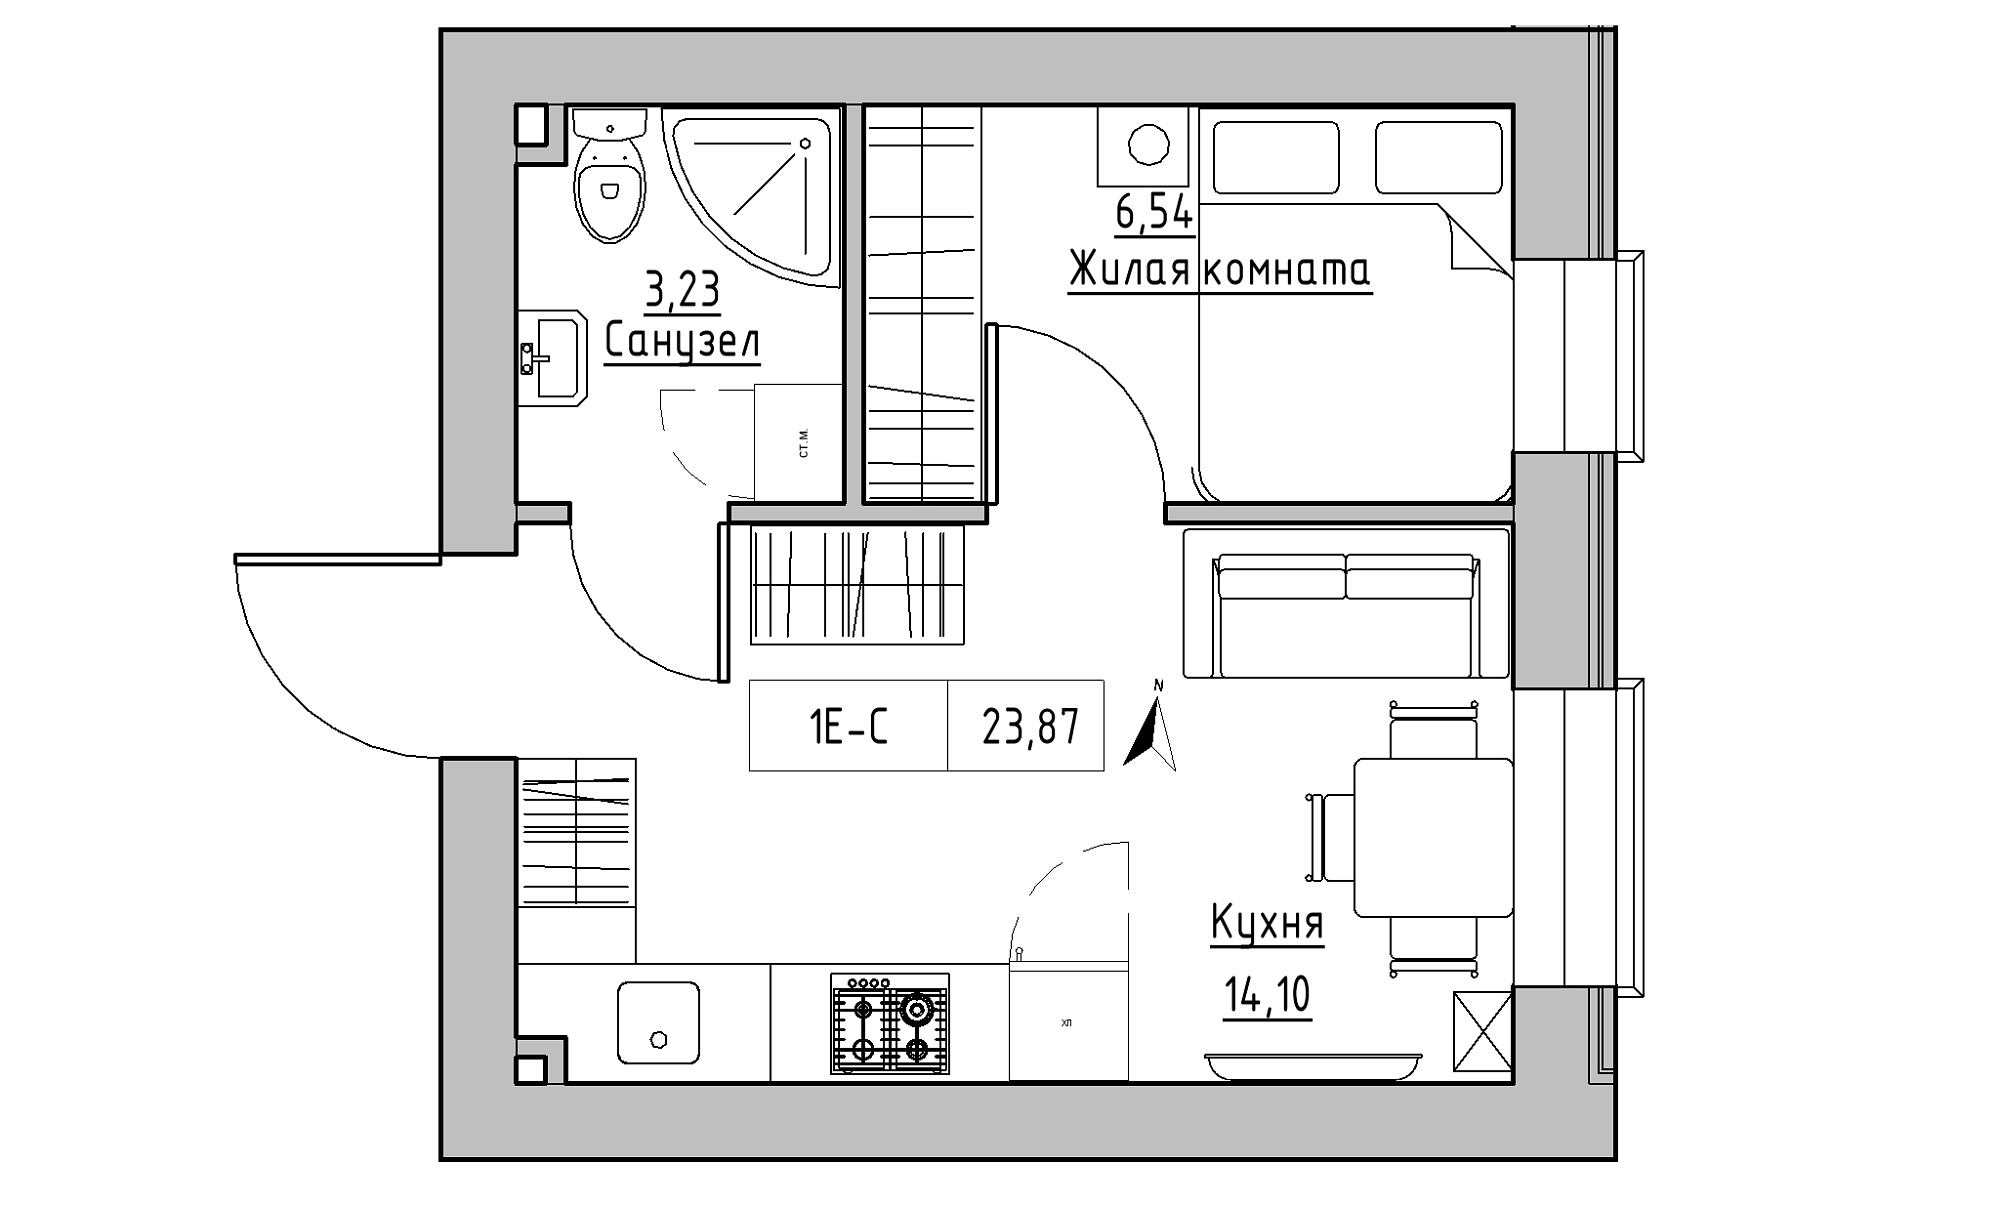 Планування 1-к квартира площею 23.87м2, KS-023-04/0004.